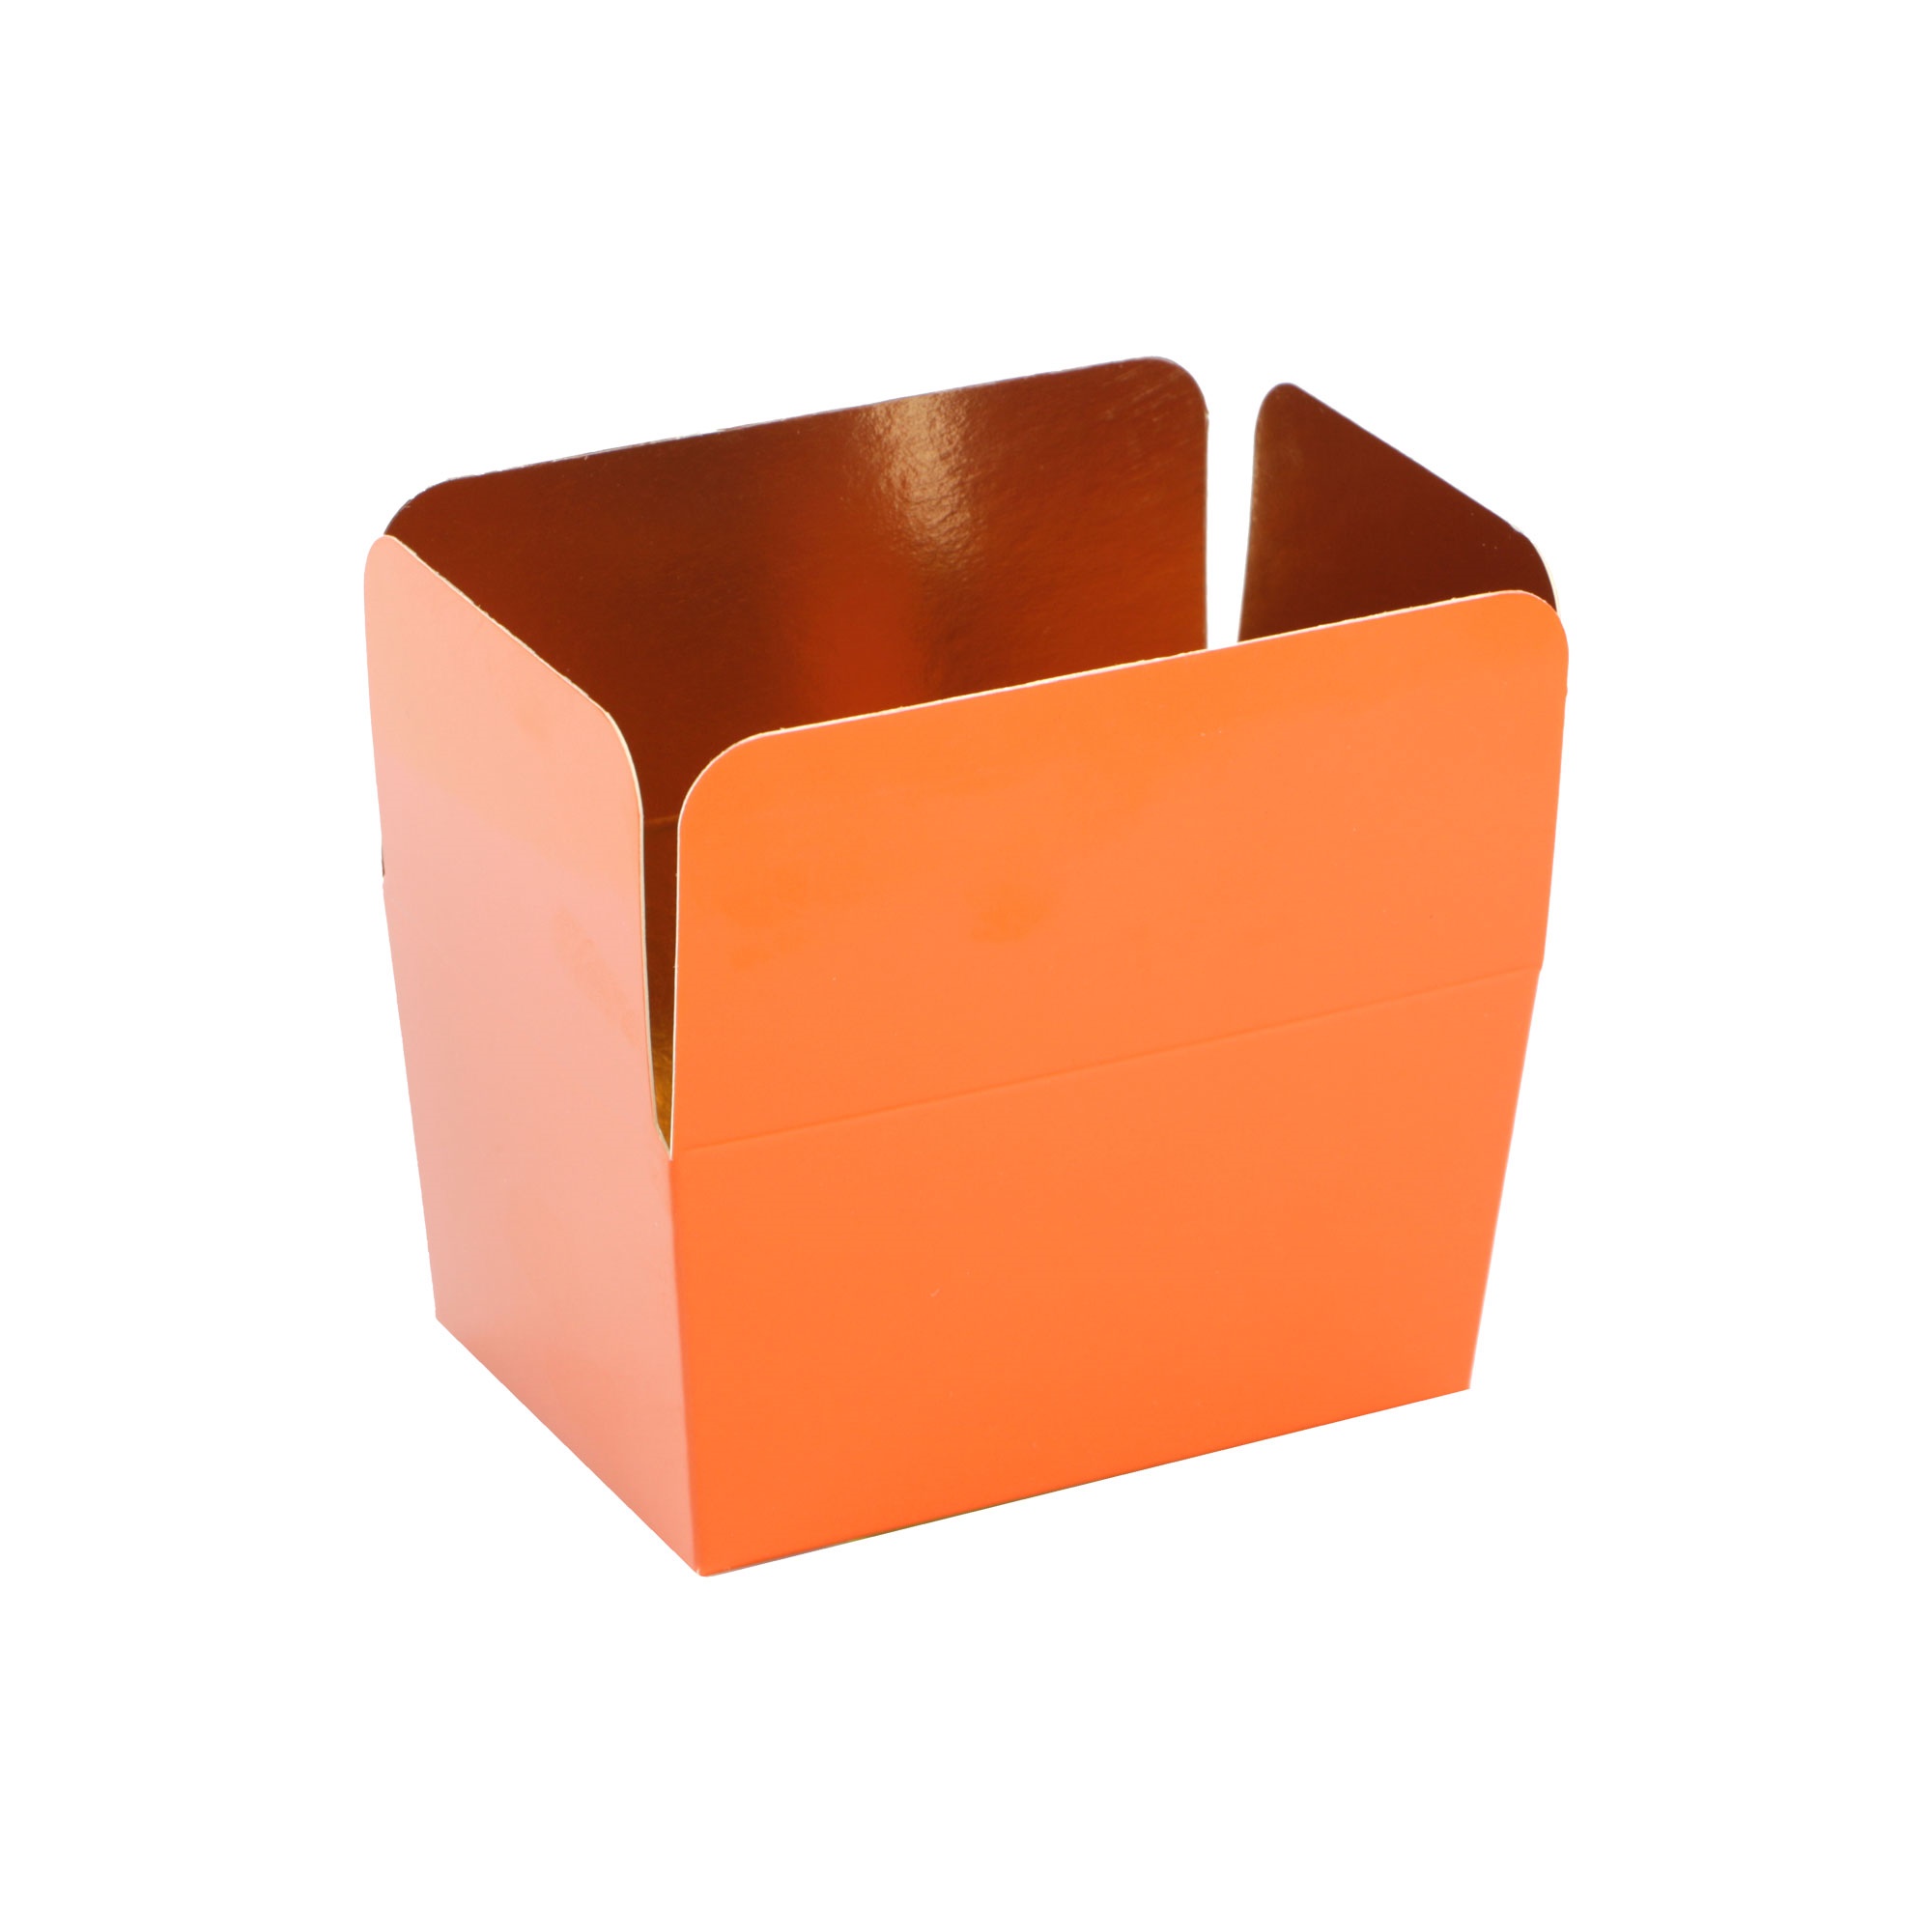 Afbeelding van Pak à 24 luxe bonbondoos 250 gram brique (oranje)